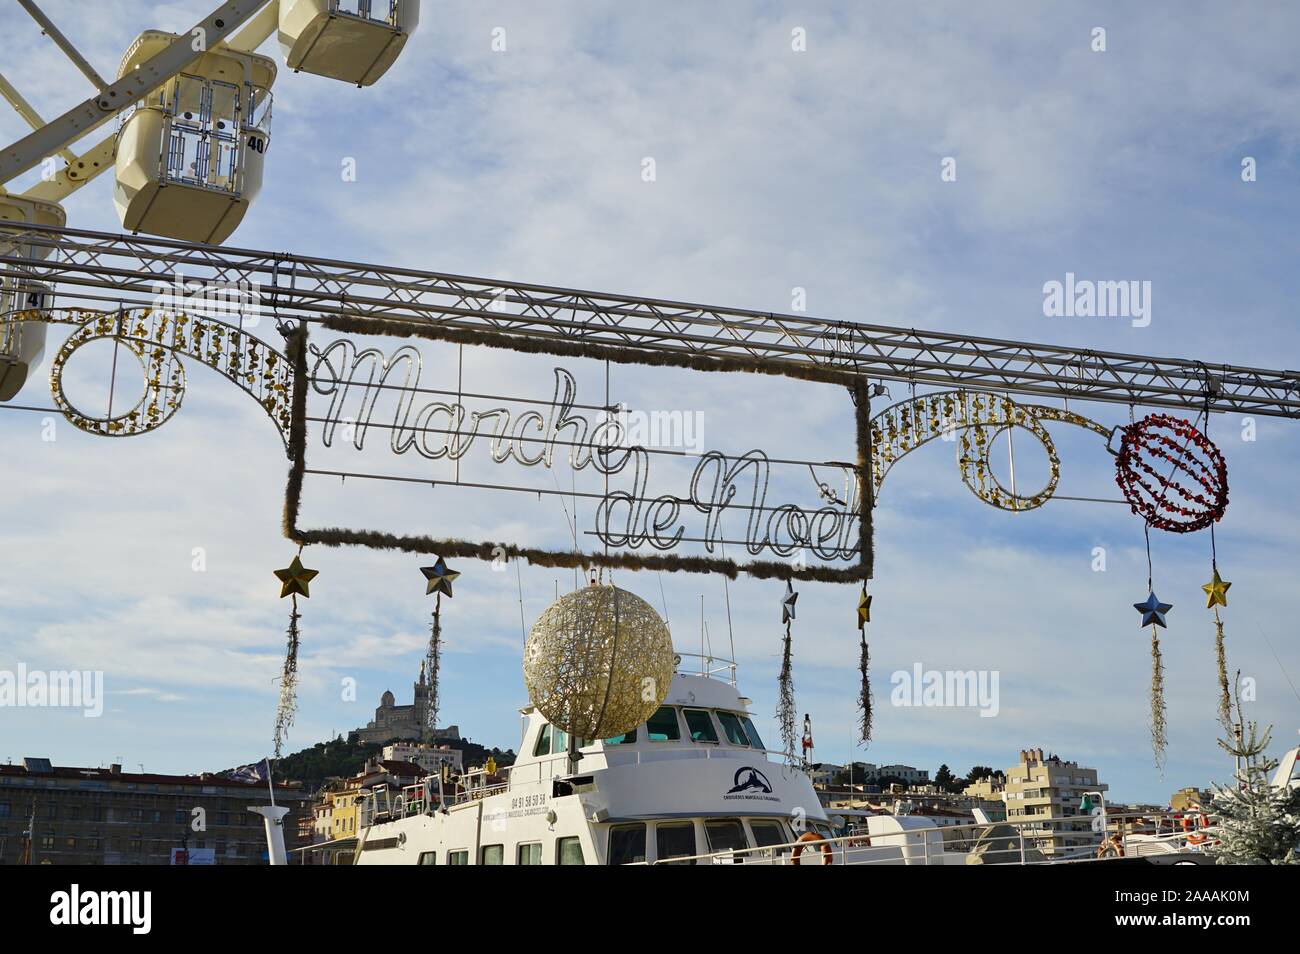 MARSEILLE, Francia - 13 NOV 2019- vista delle Marche de Noel e Foire aux Santons mercatino di Natale sul Vieux Port (porto vecchio) a Marsiglia, Francia. Foto Stock